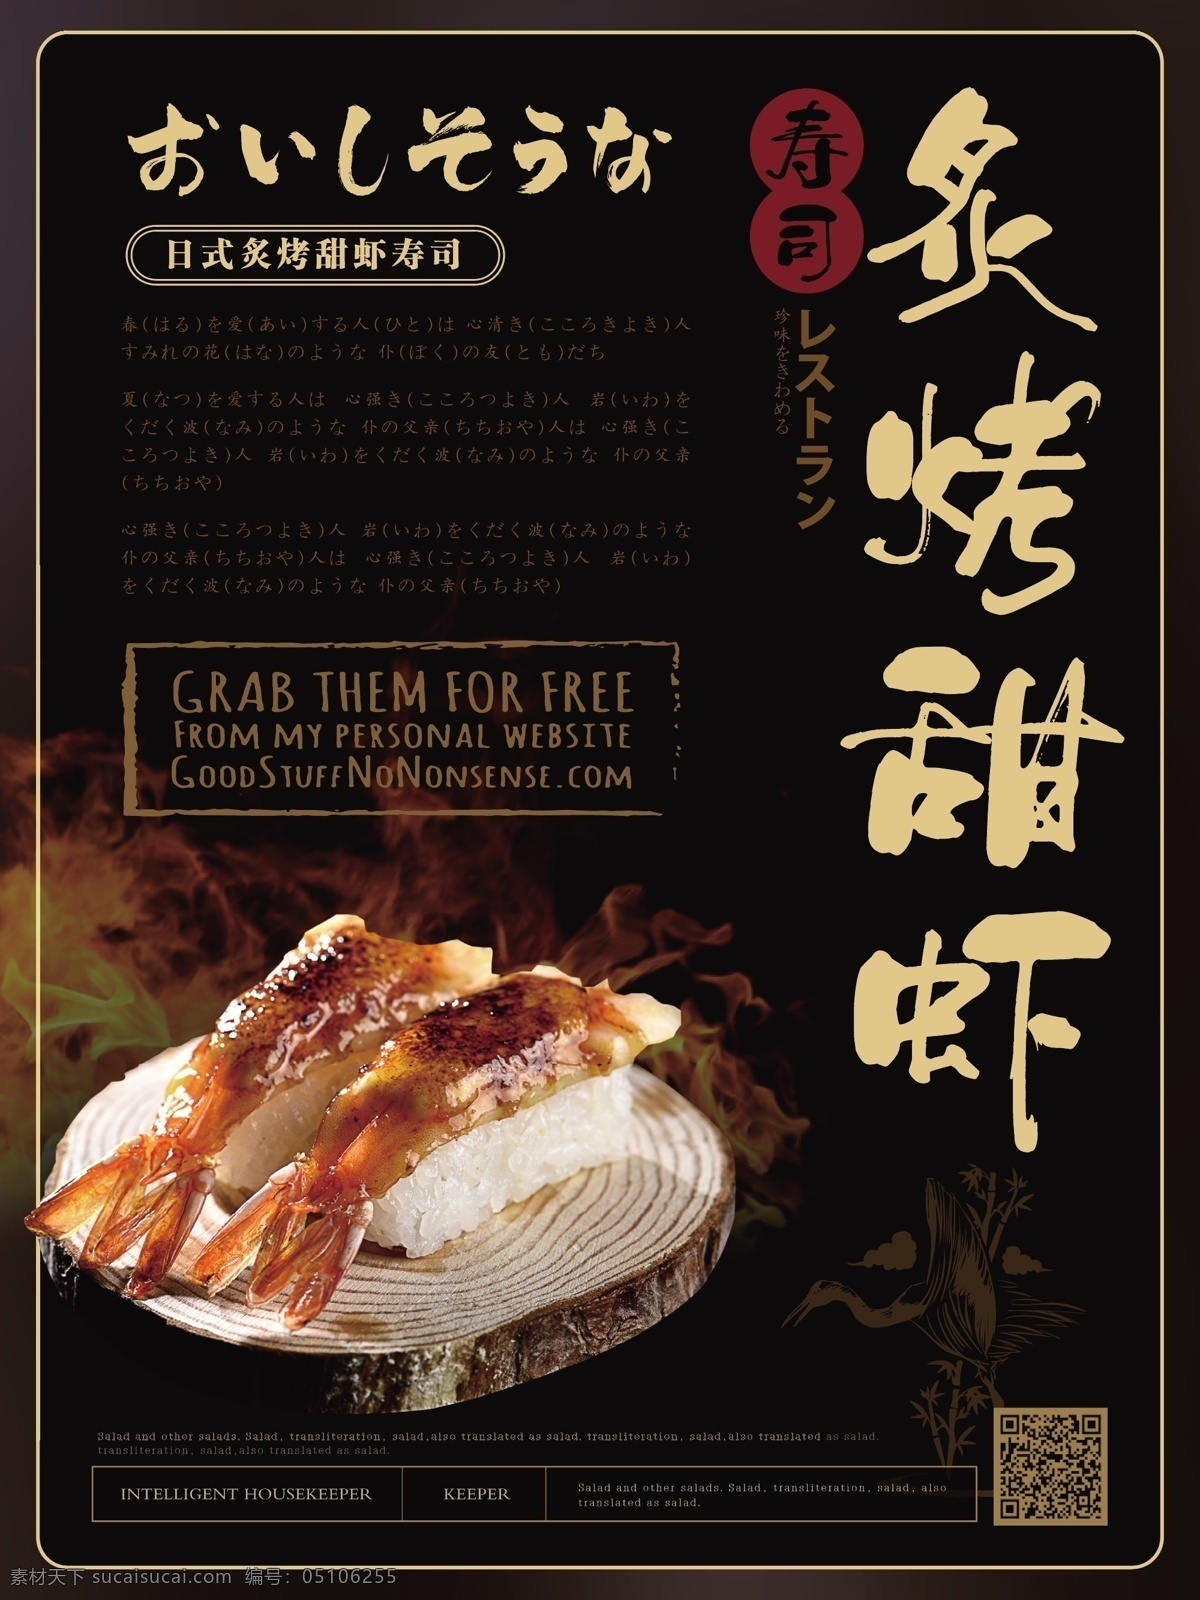 简约 风 寿司 美食 主题 海报 简约风 日式料理 炙烤甜虾寿司 健康 特色 食品 大气